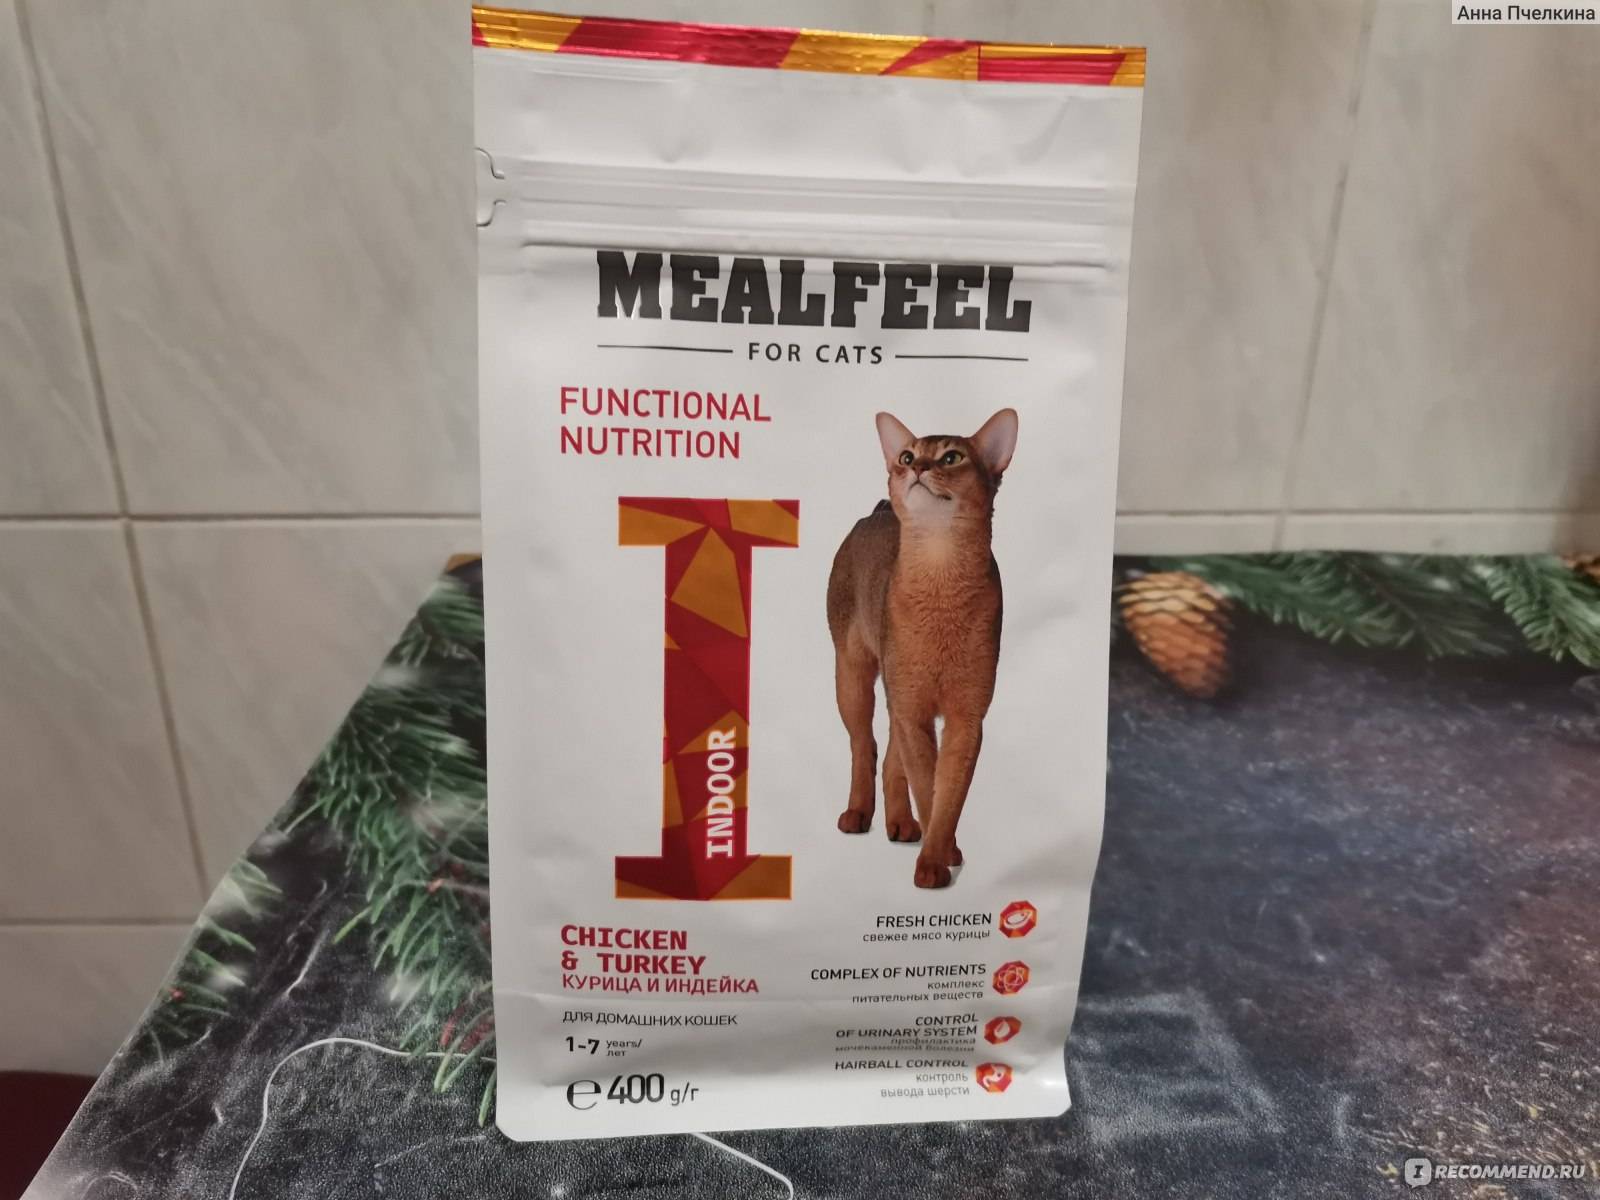 Mealfeel сухой корм для кошек: обзор, ассортимент, состав, плюсы и минусы, отзывы ветеринаров и владельцев